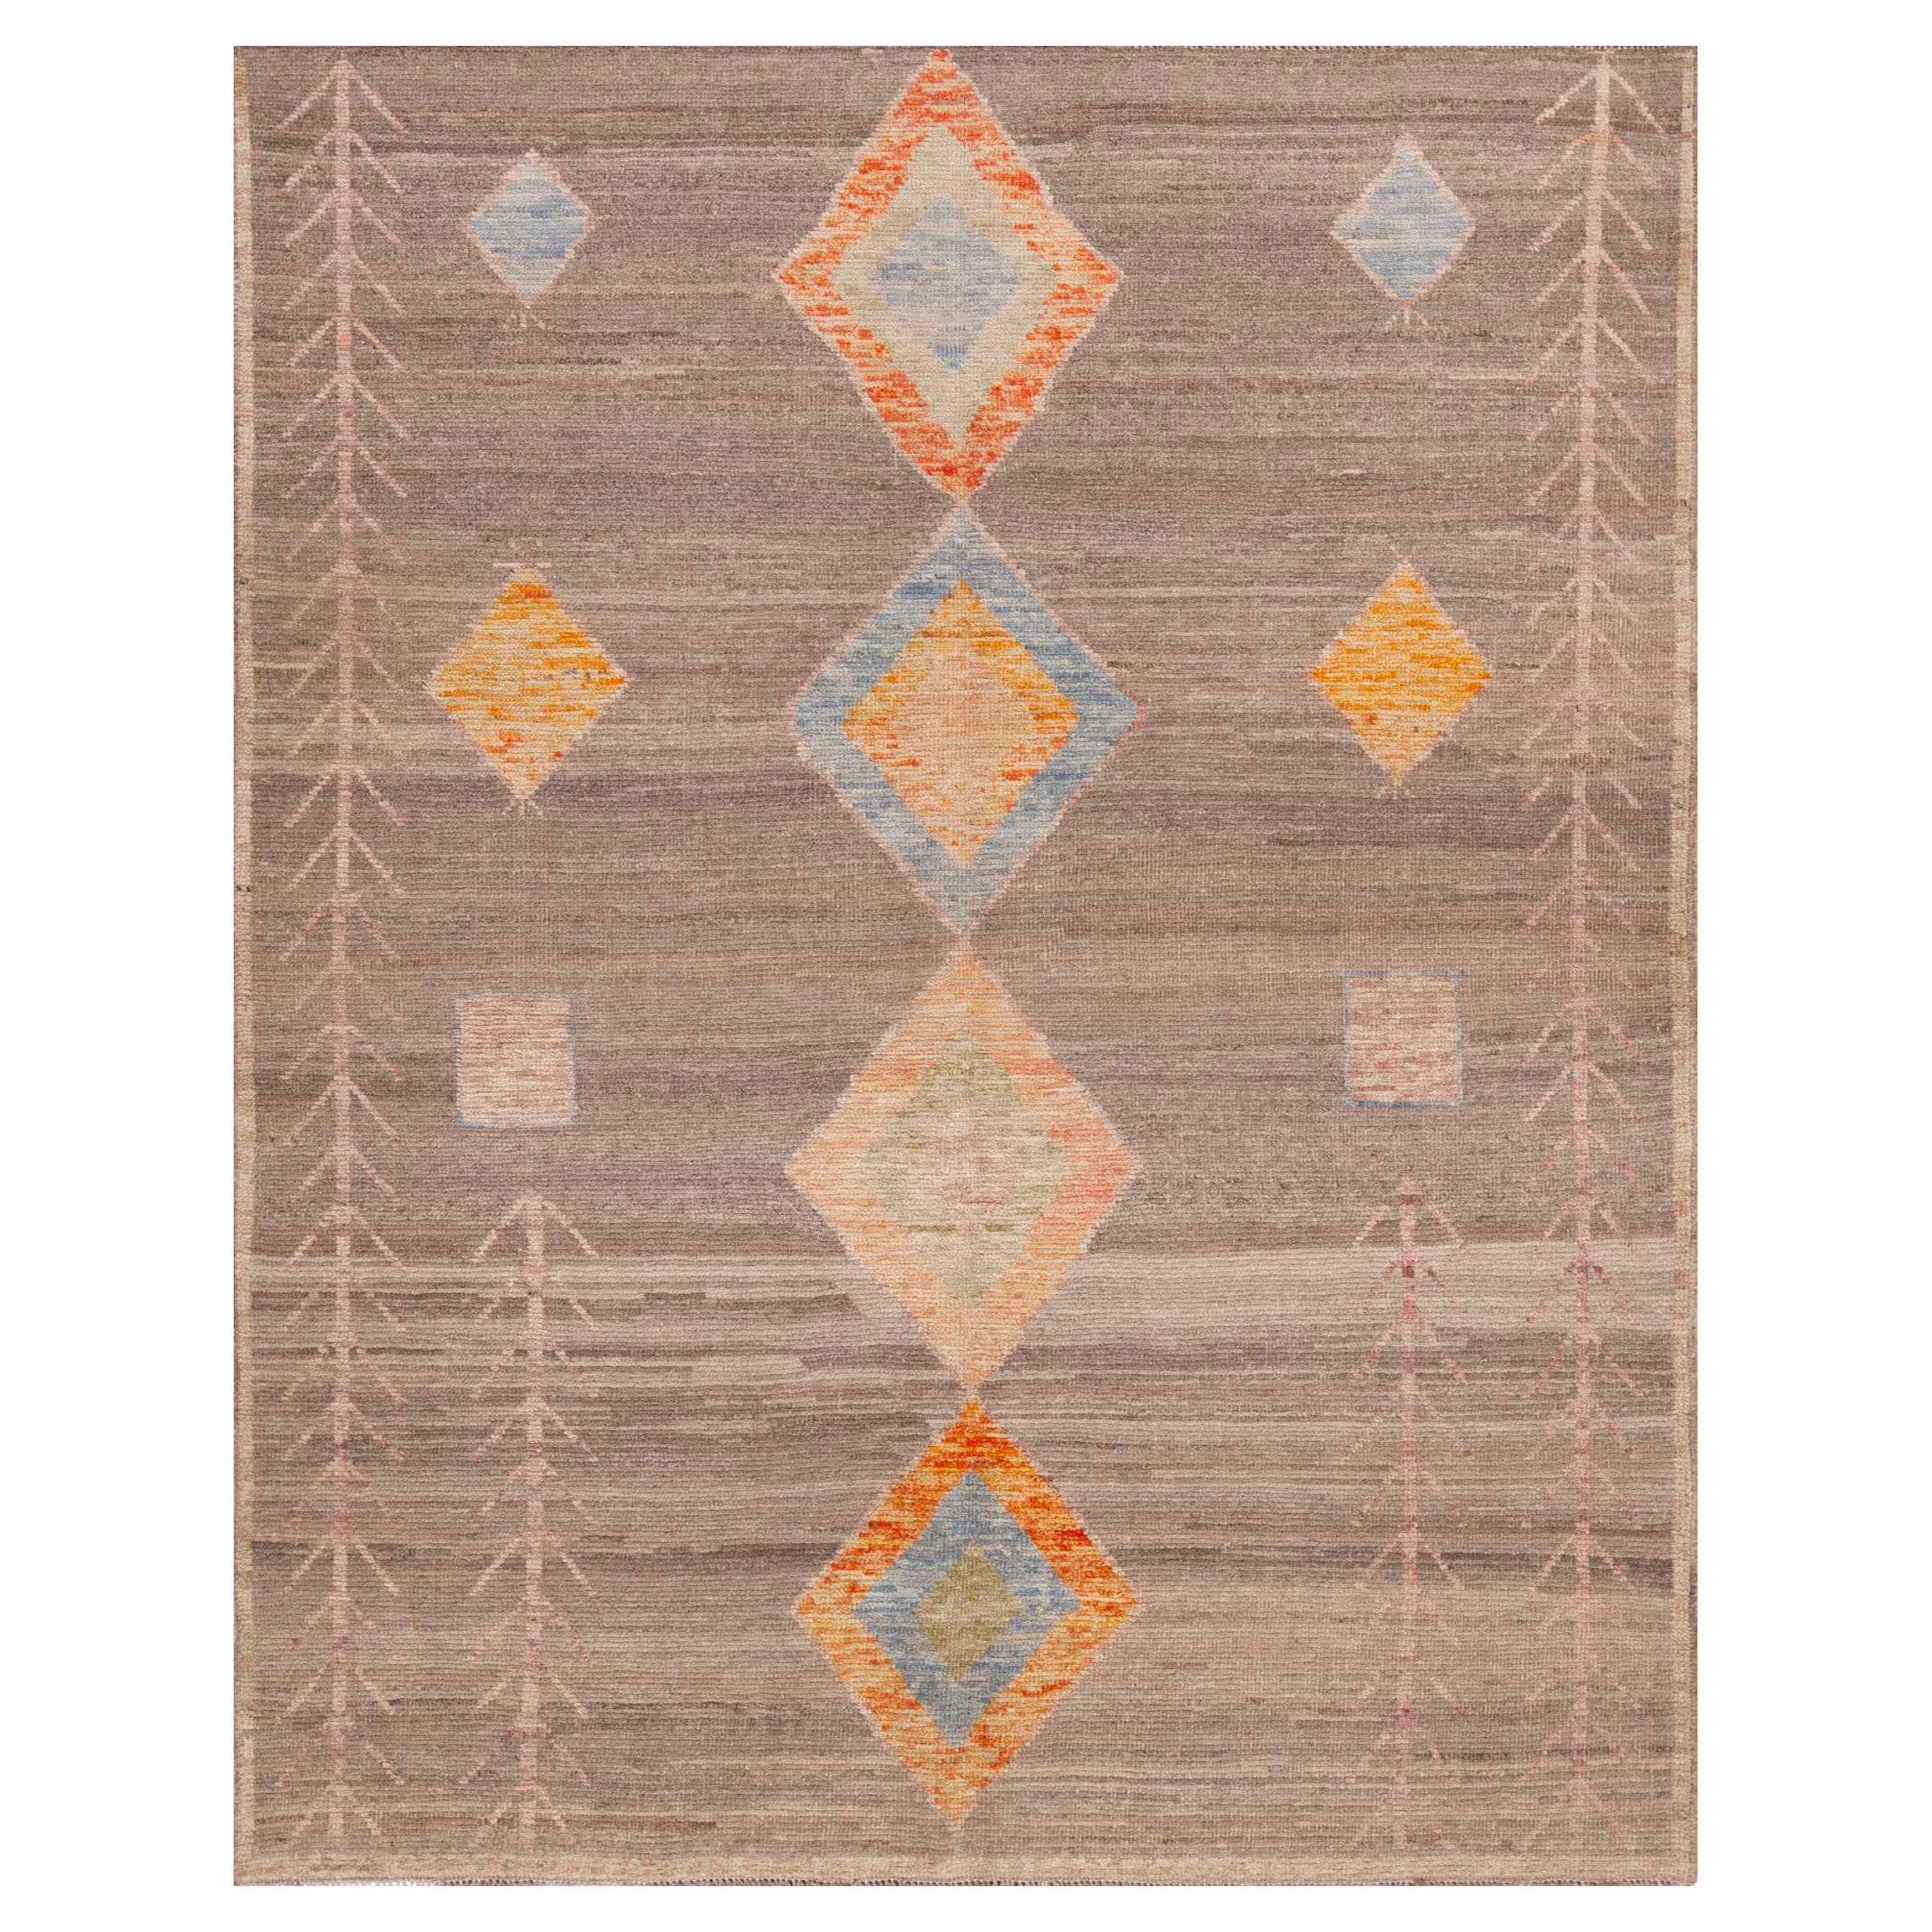 Collection Nazmiyal, petite taille, tapis tribal géométrique de 5'1" x 6'4"